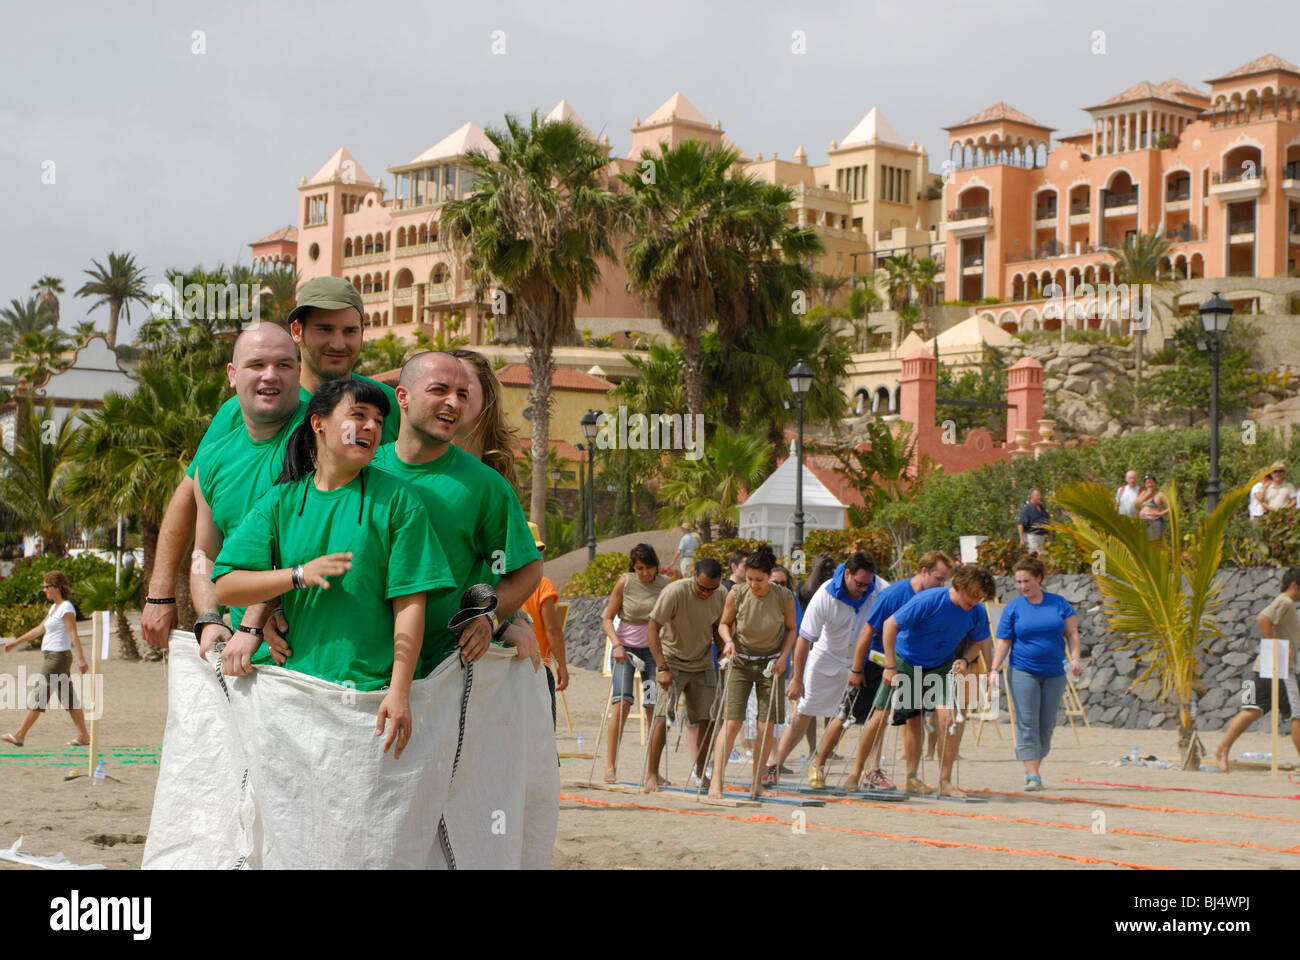 Spagna Isole Canarie Tenerife Costa Adeje, Playa El Duque, animazione in spiaggia, attività sportive, sacco gara Foto Stock